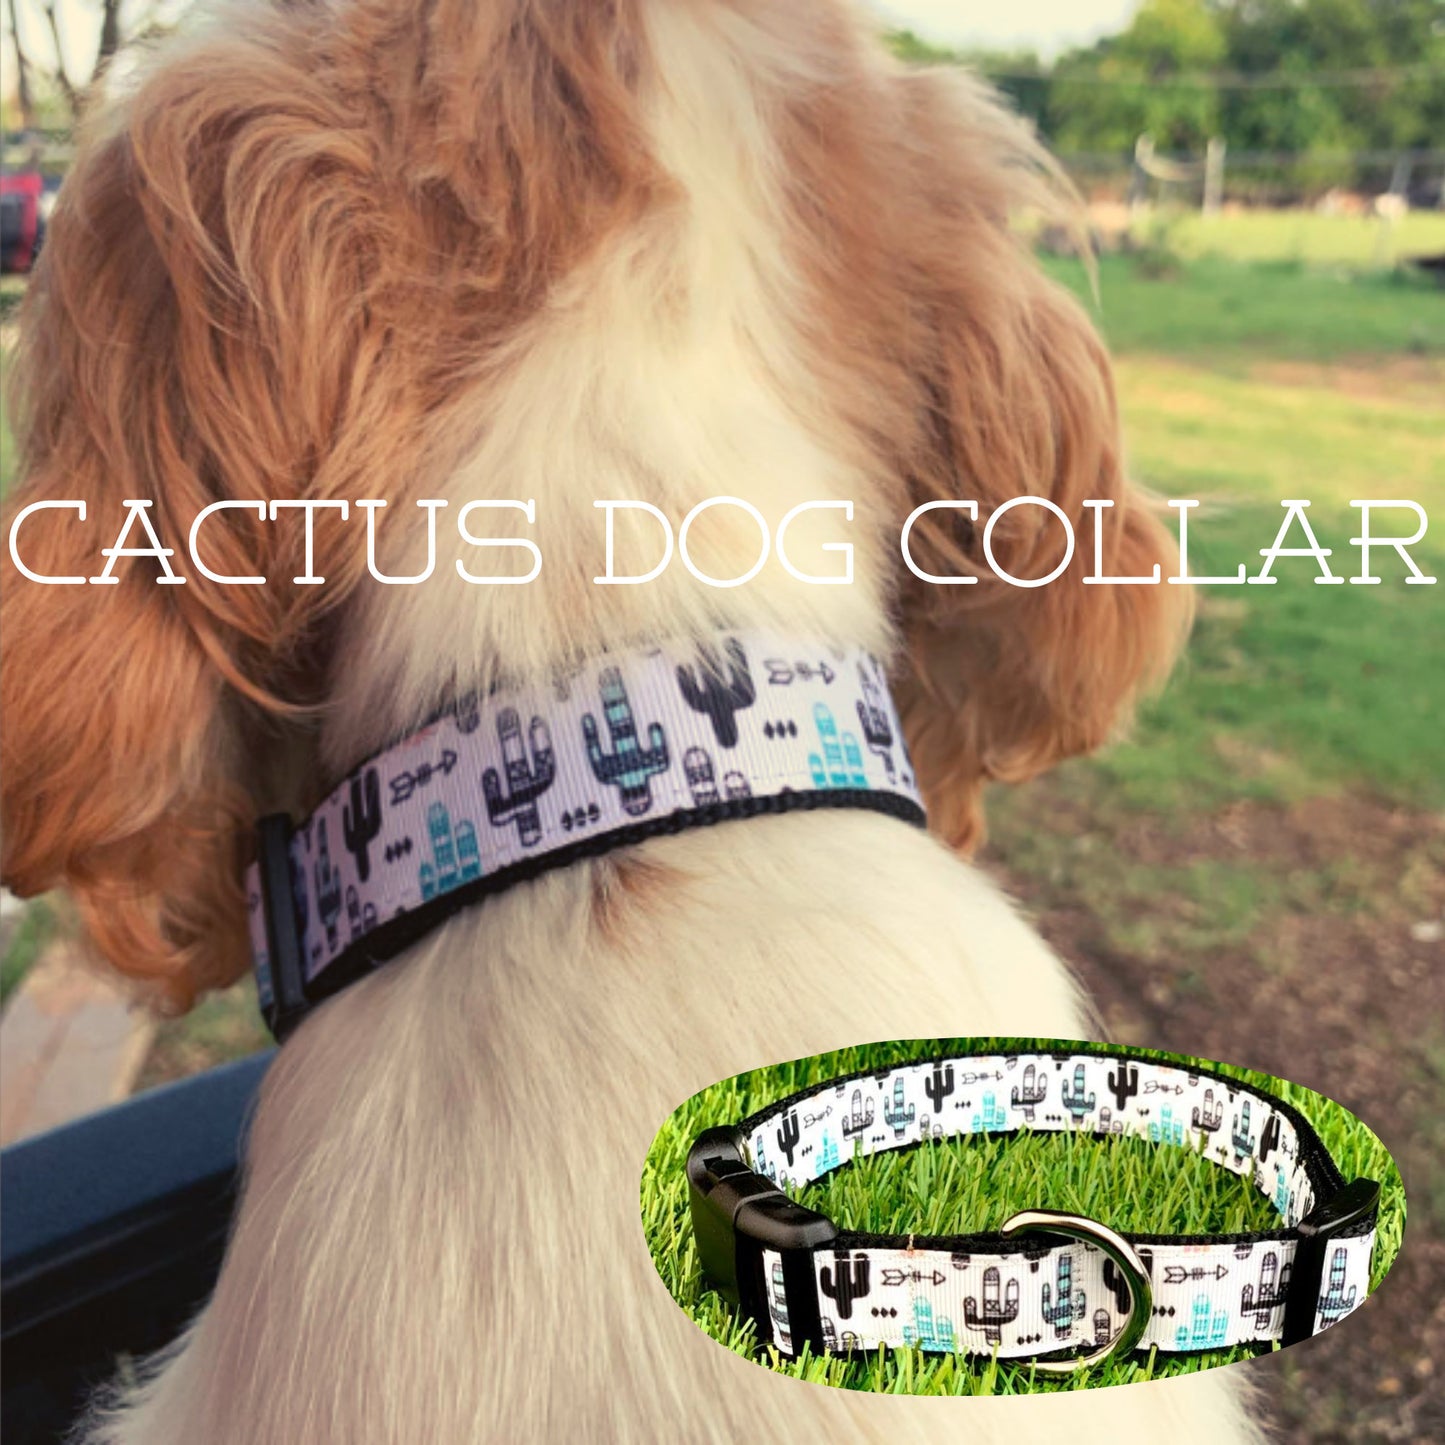 White Black Teal Cactus Saguaro Dog Collar